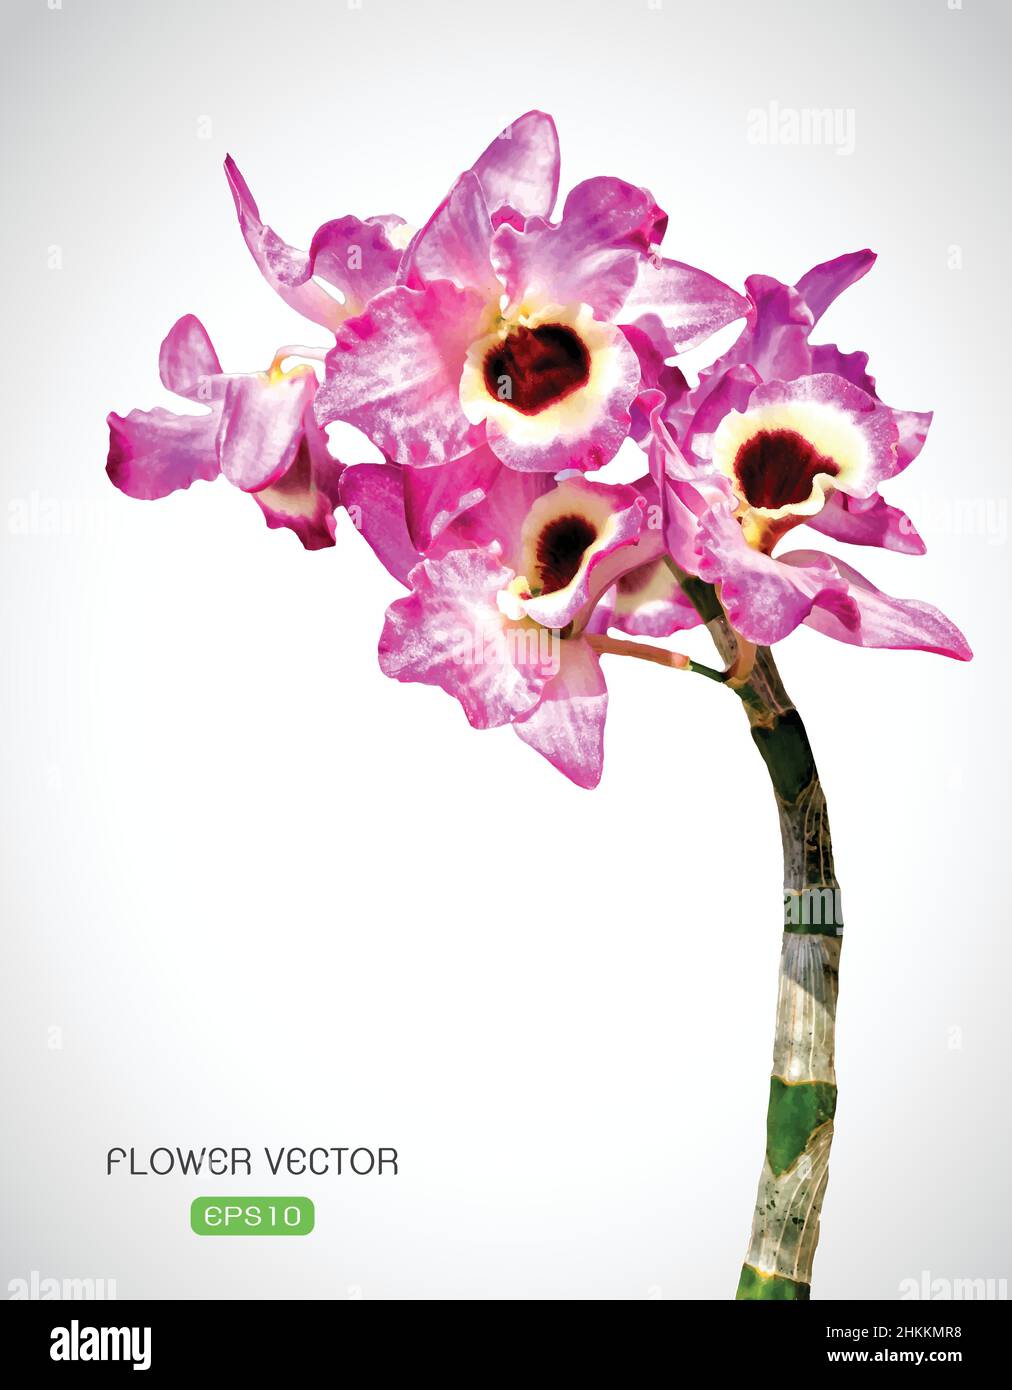 Image vectorielle de la fleur d'orchidée sur fond blanc. Illustration vectorielle superposée facile à modifier. Illustration de Vecteur